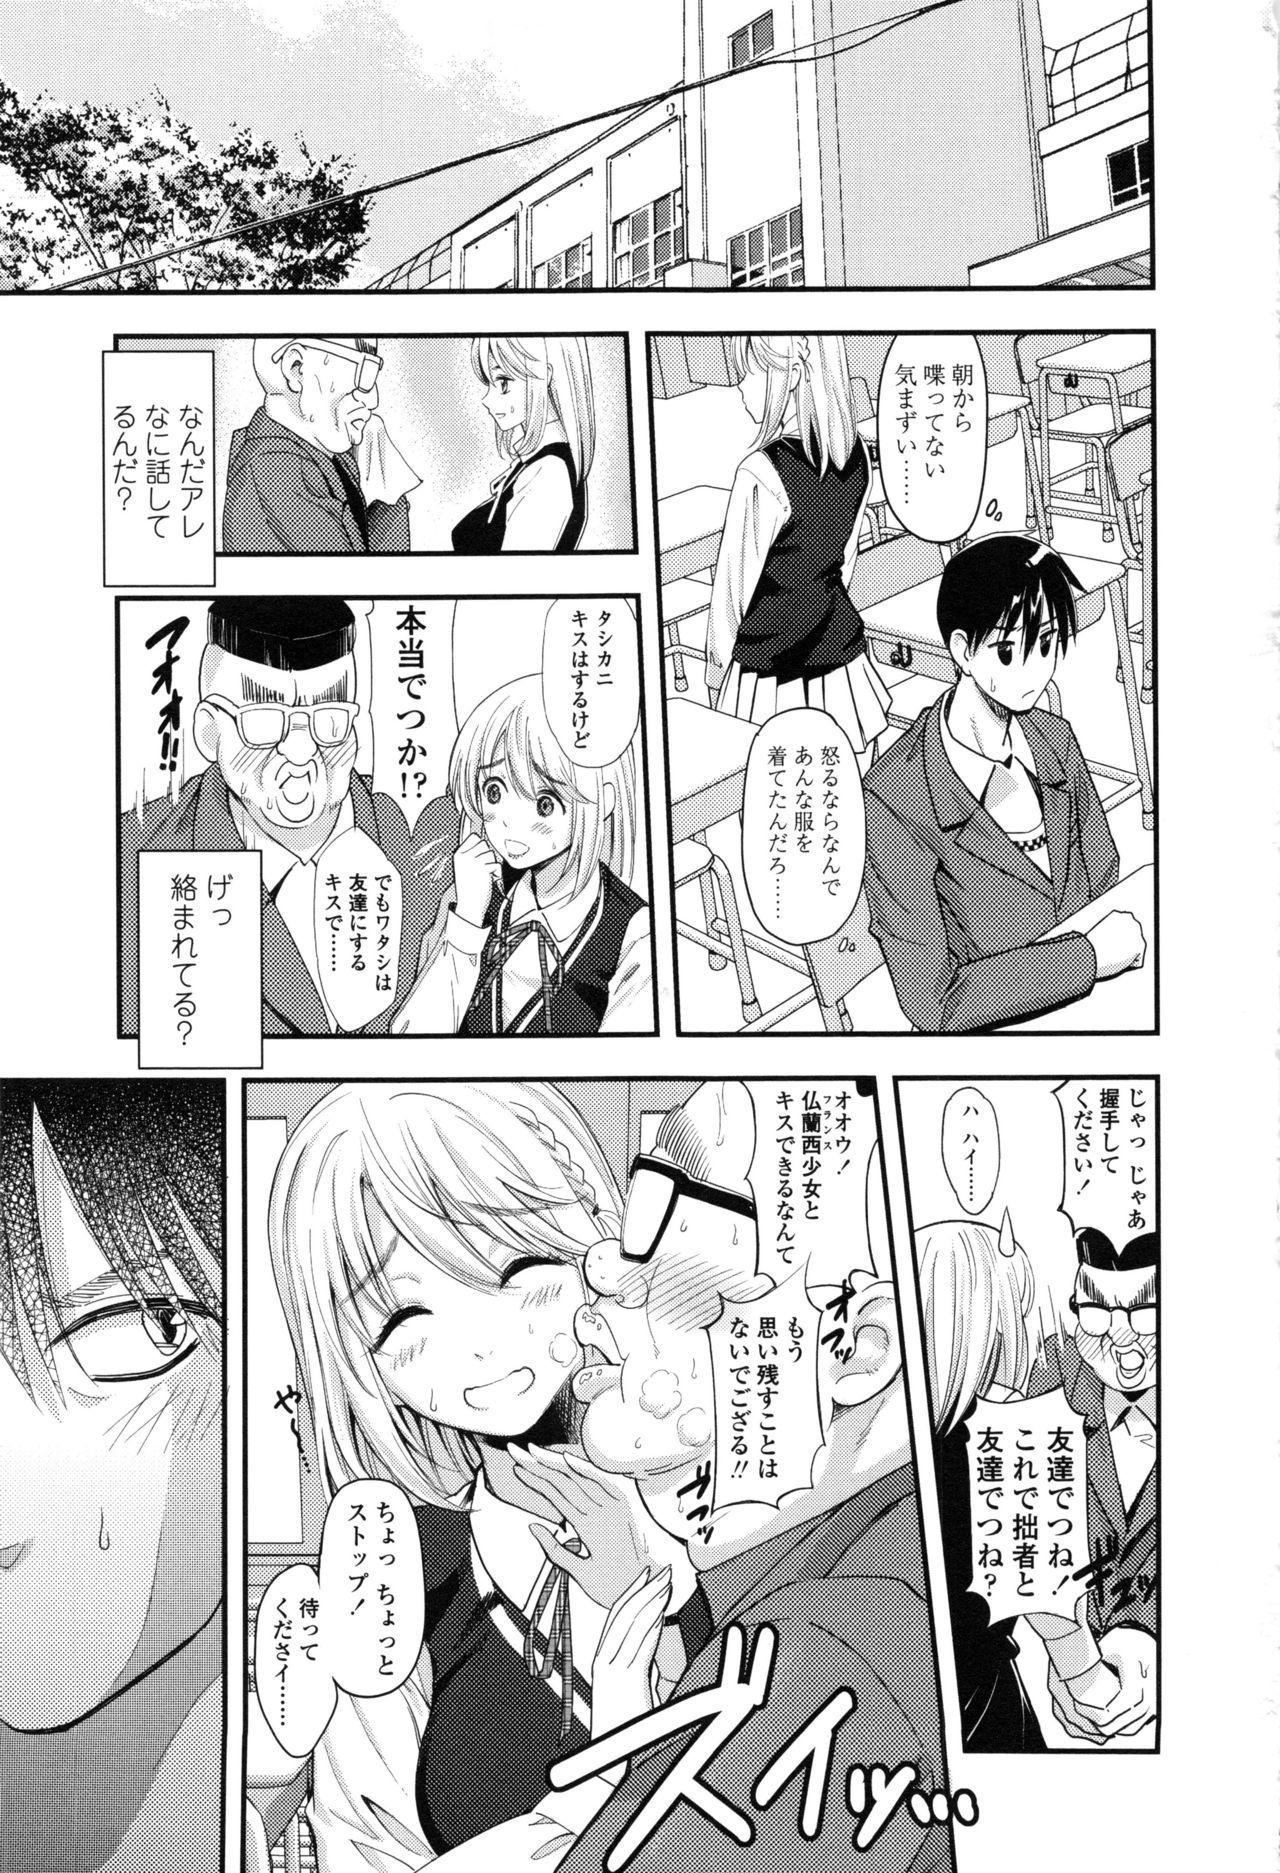 Seifuku no Mama Aishinasai! - Love in school uniform 133